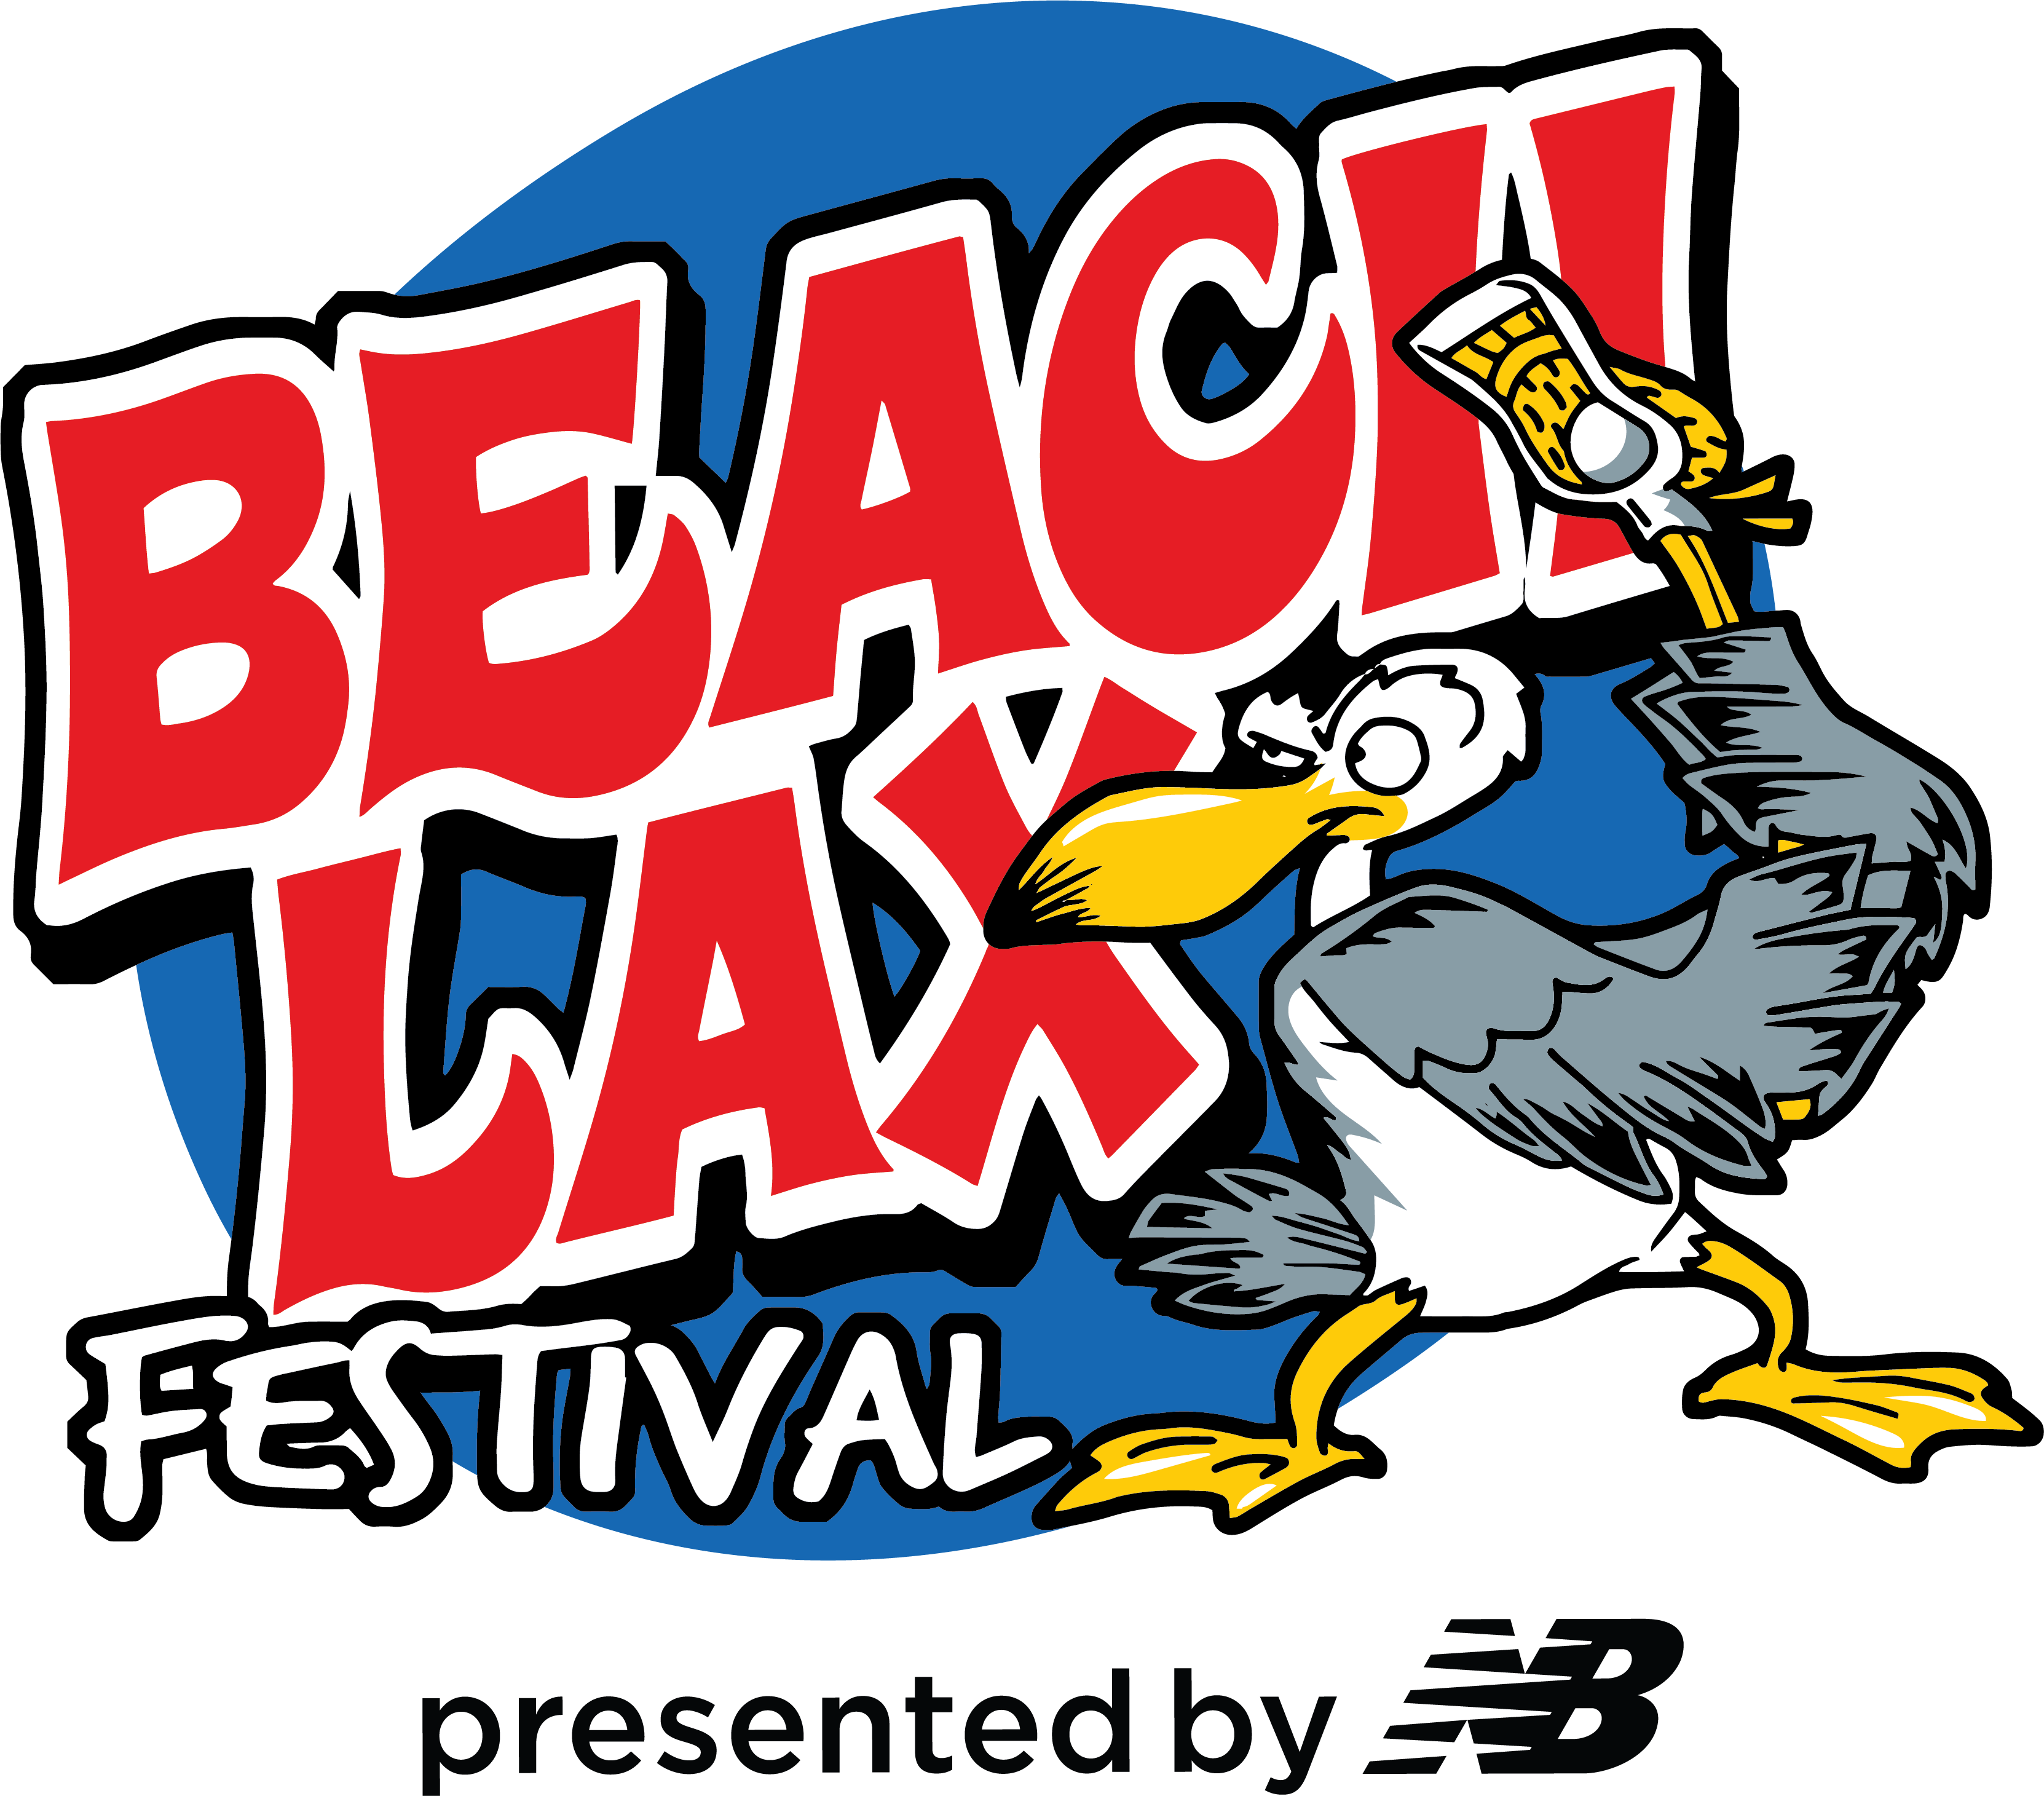 Boys Beach Lax Festival